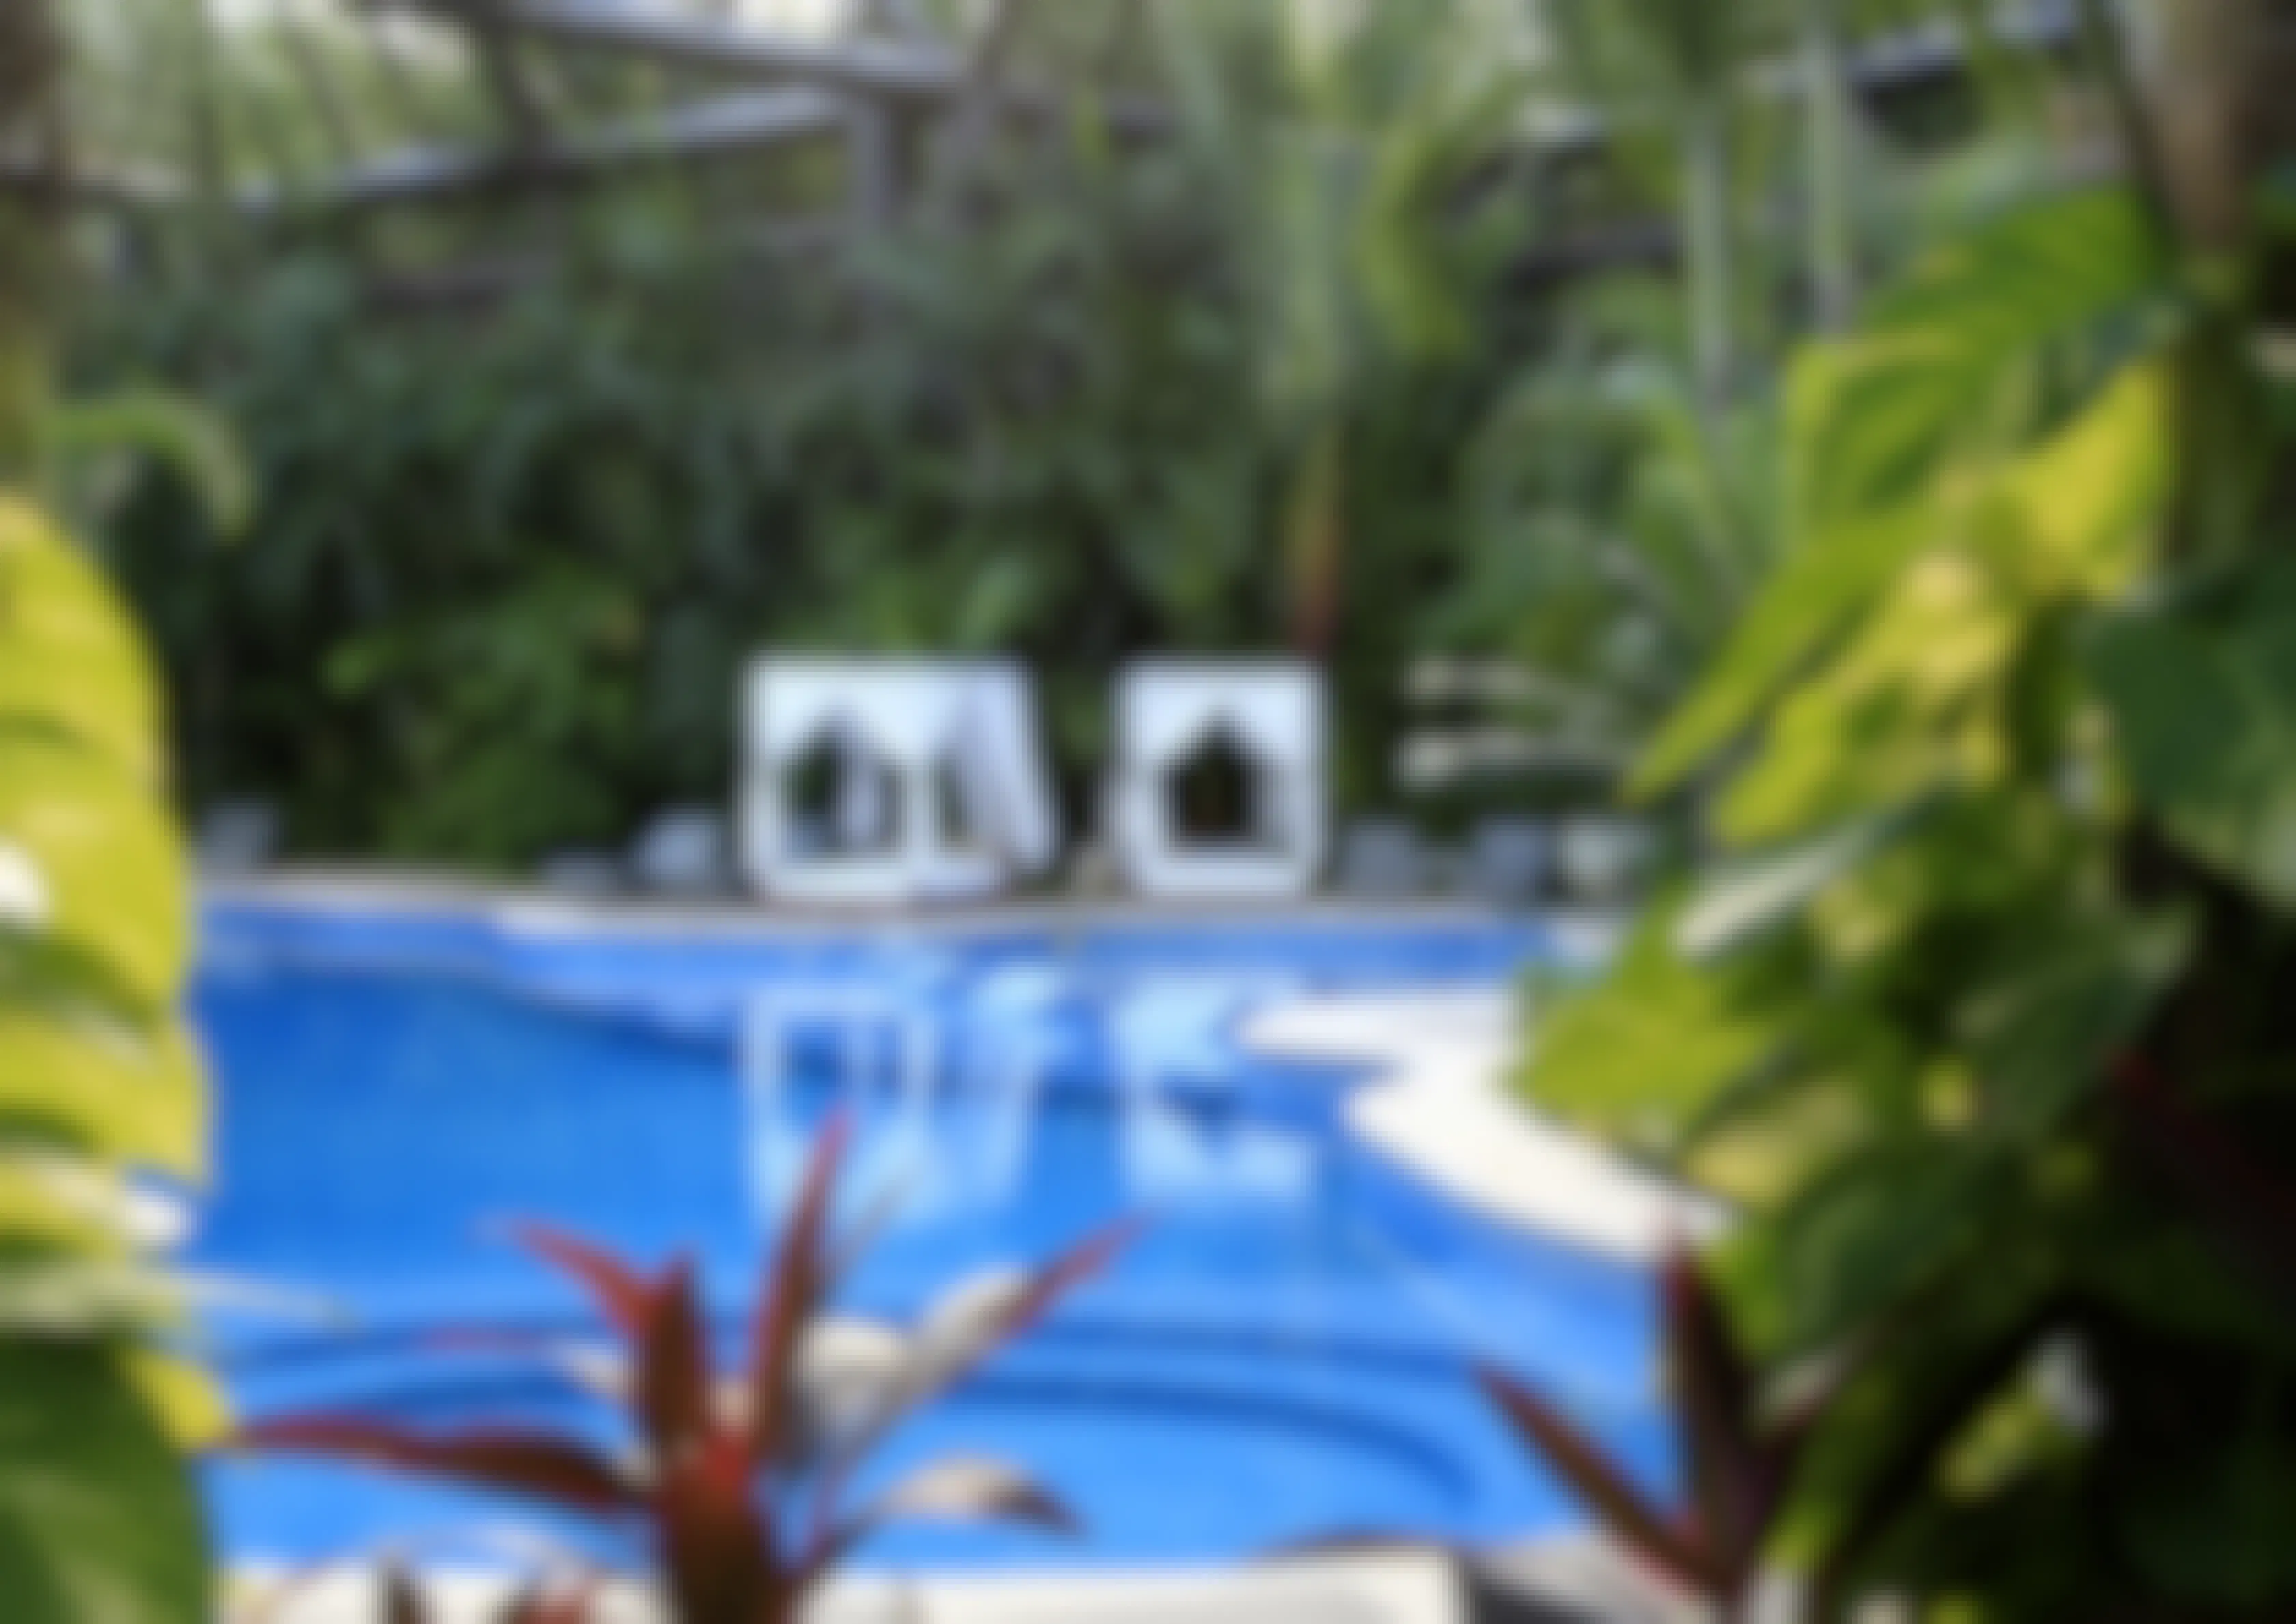 Vidanta Grand Mayan resort pool and cabanas